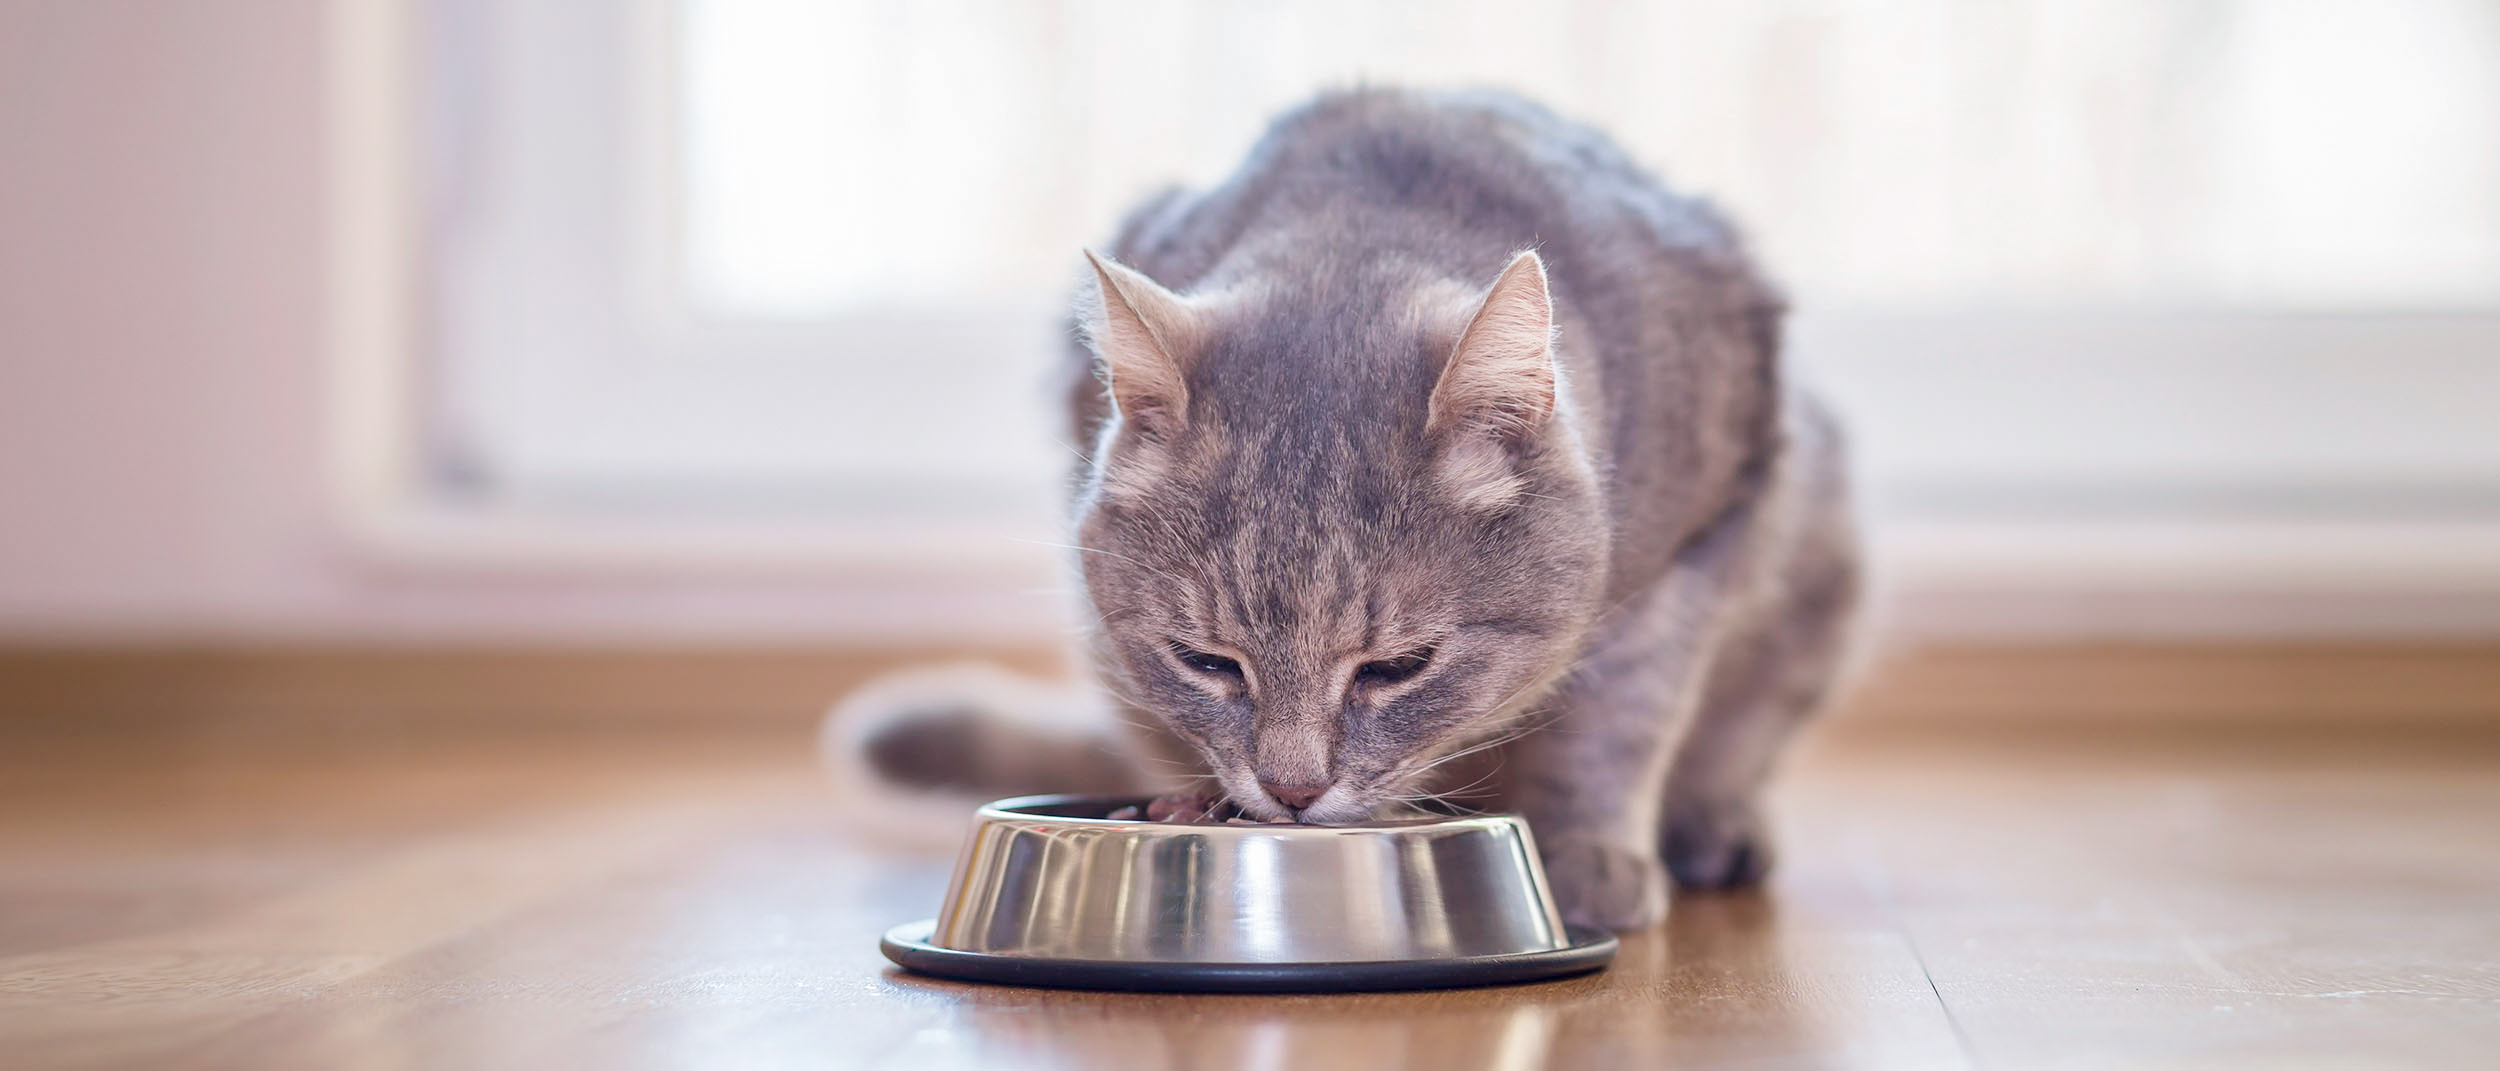 Gato adulto sentado em ambiente interno comendo em uma tigela prata.